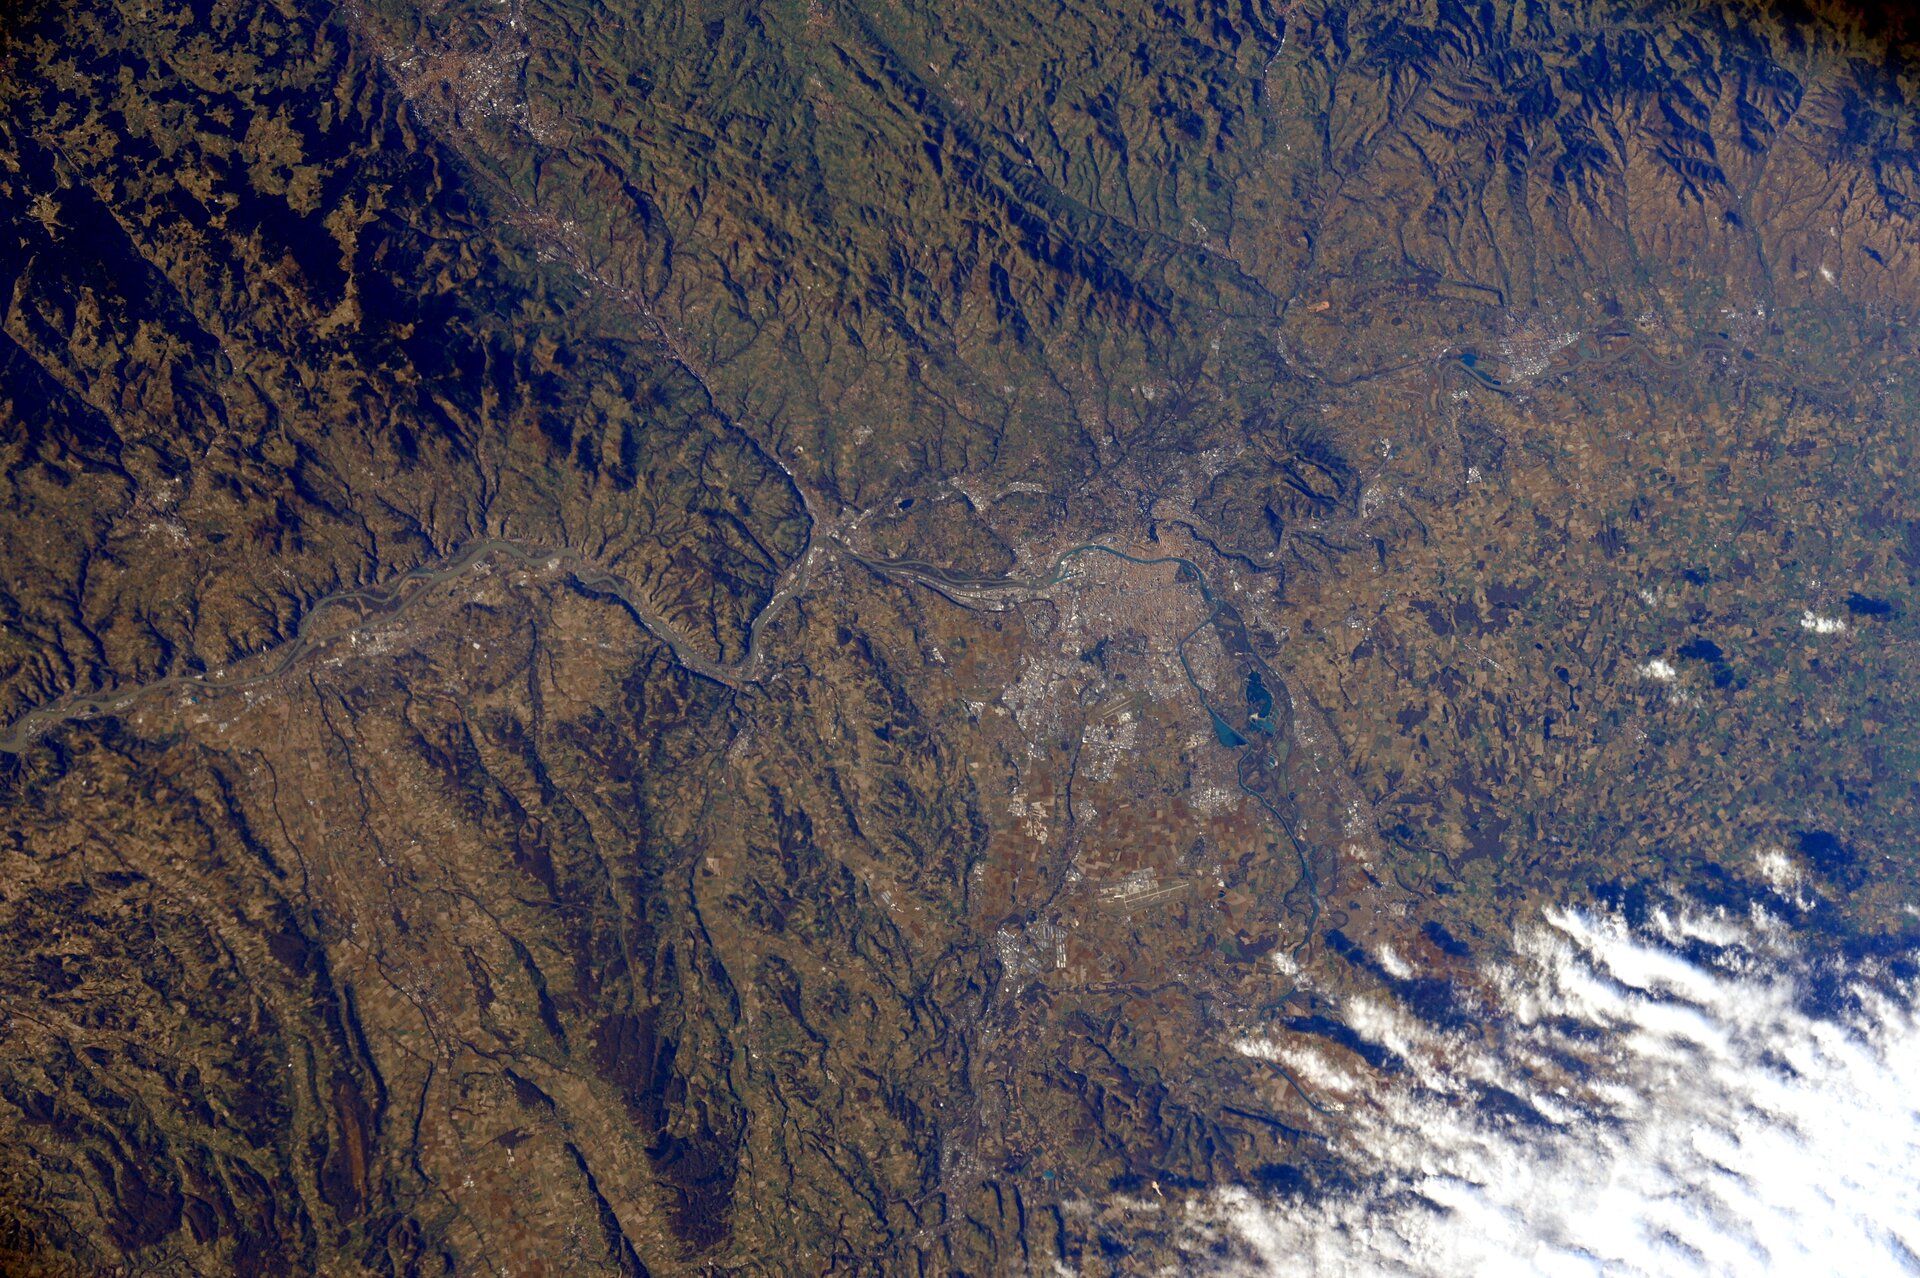 Lyon, France, vue depuis la Station spatiale internationale